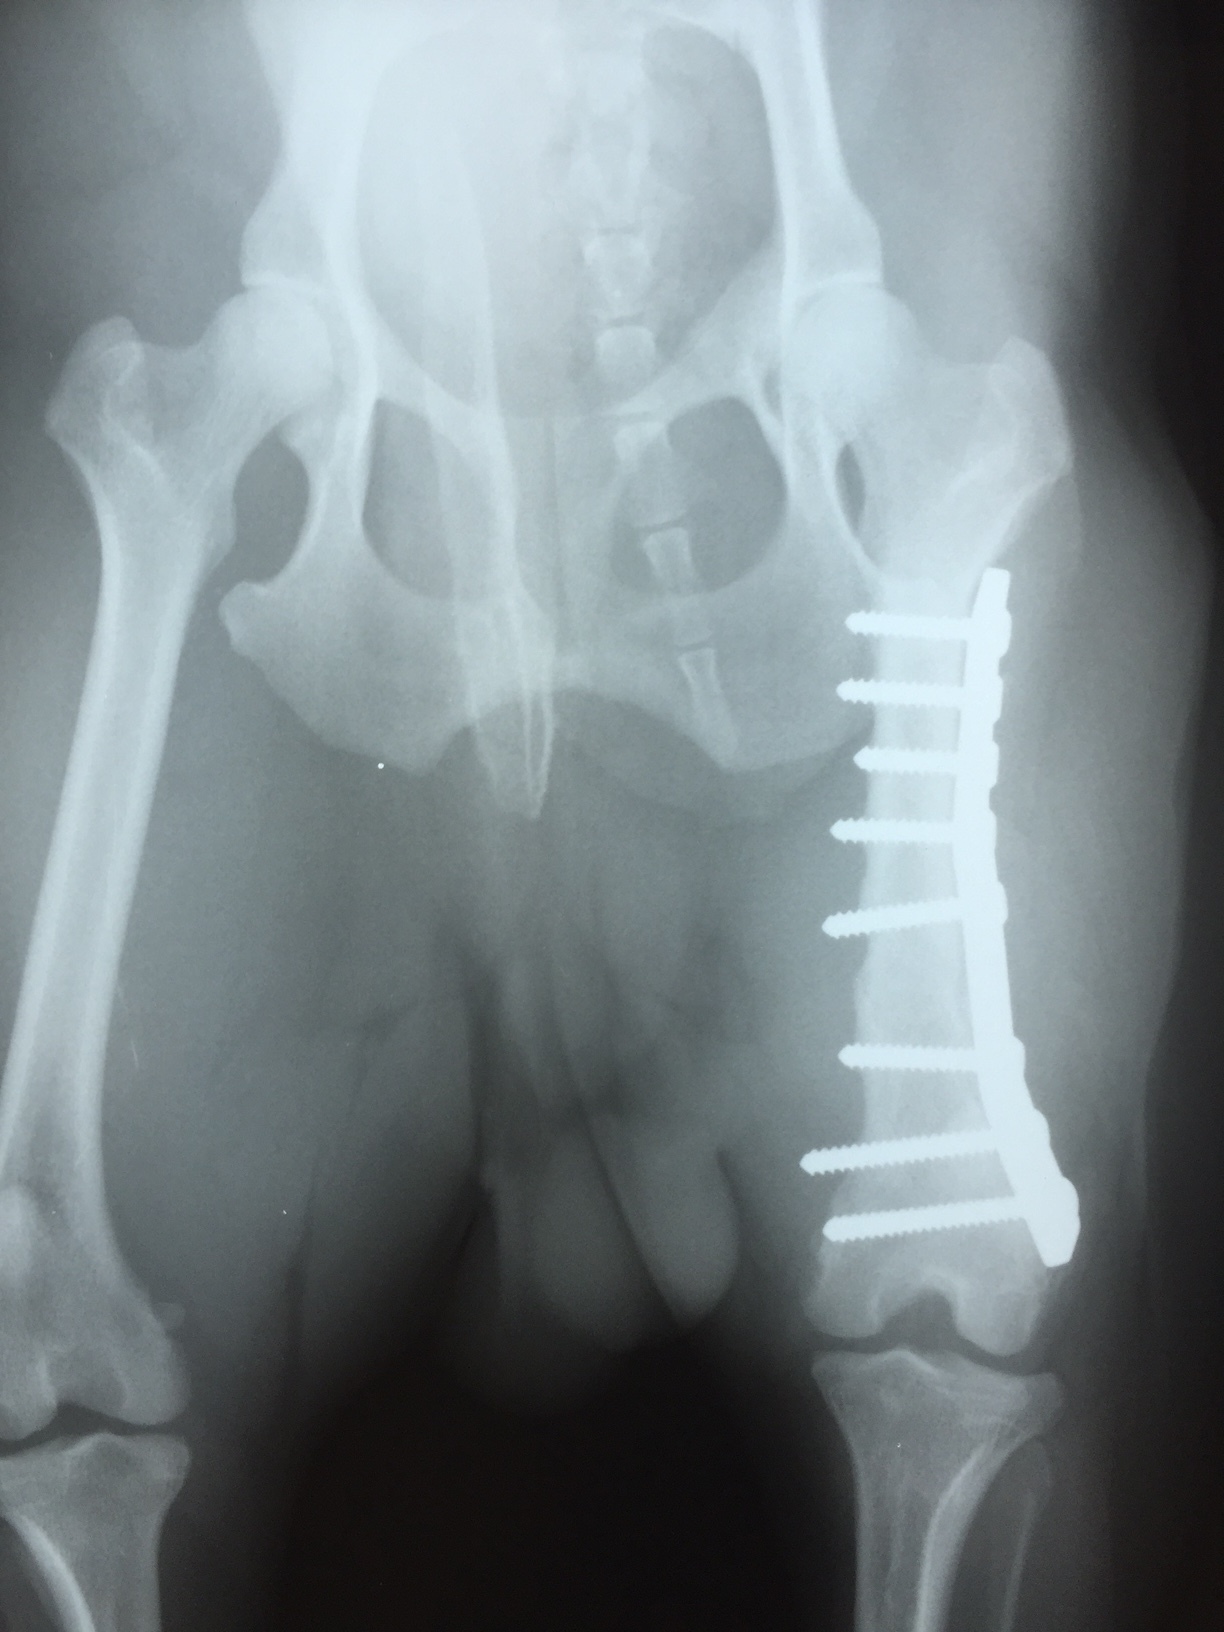 大腿骨転子部骨折の手術とリハビリの進め方。注意点についても解説 - かずぼーのリハビリ大全